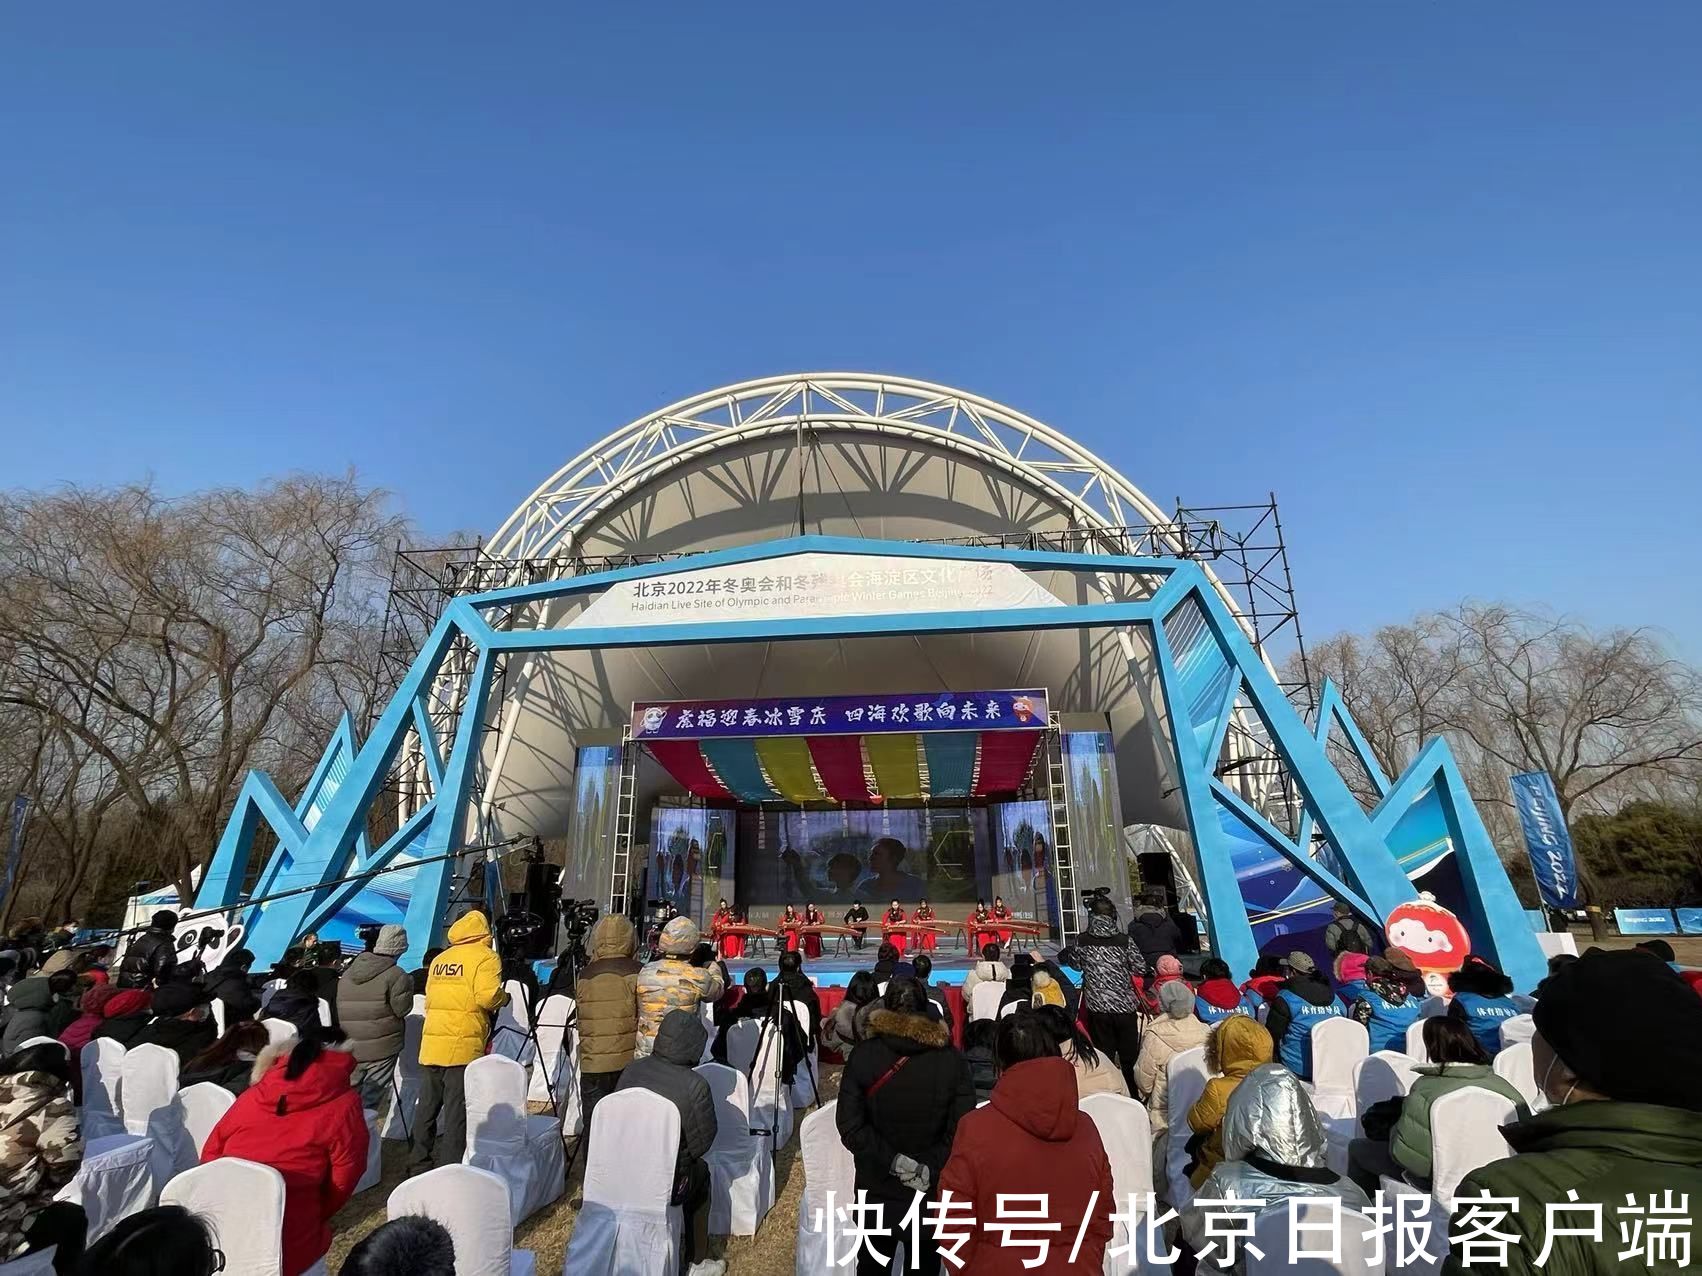 文化活动|北京538项8266场城市文化活动迎冬奥贺新春